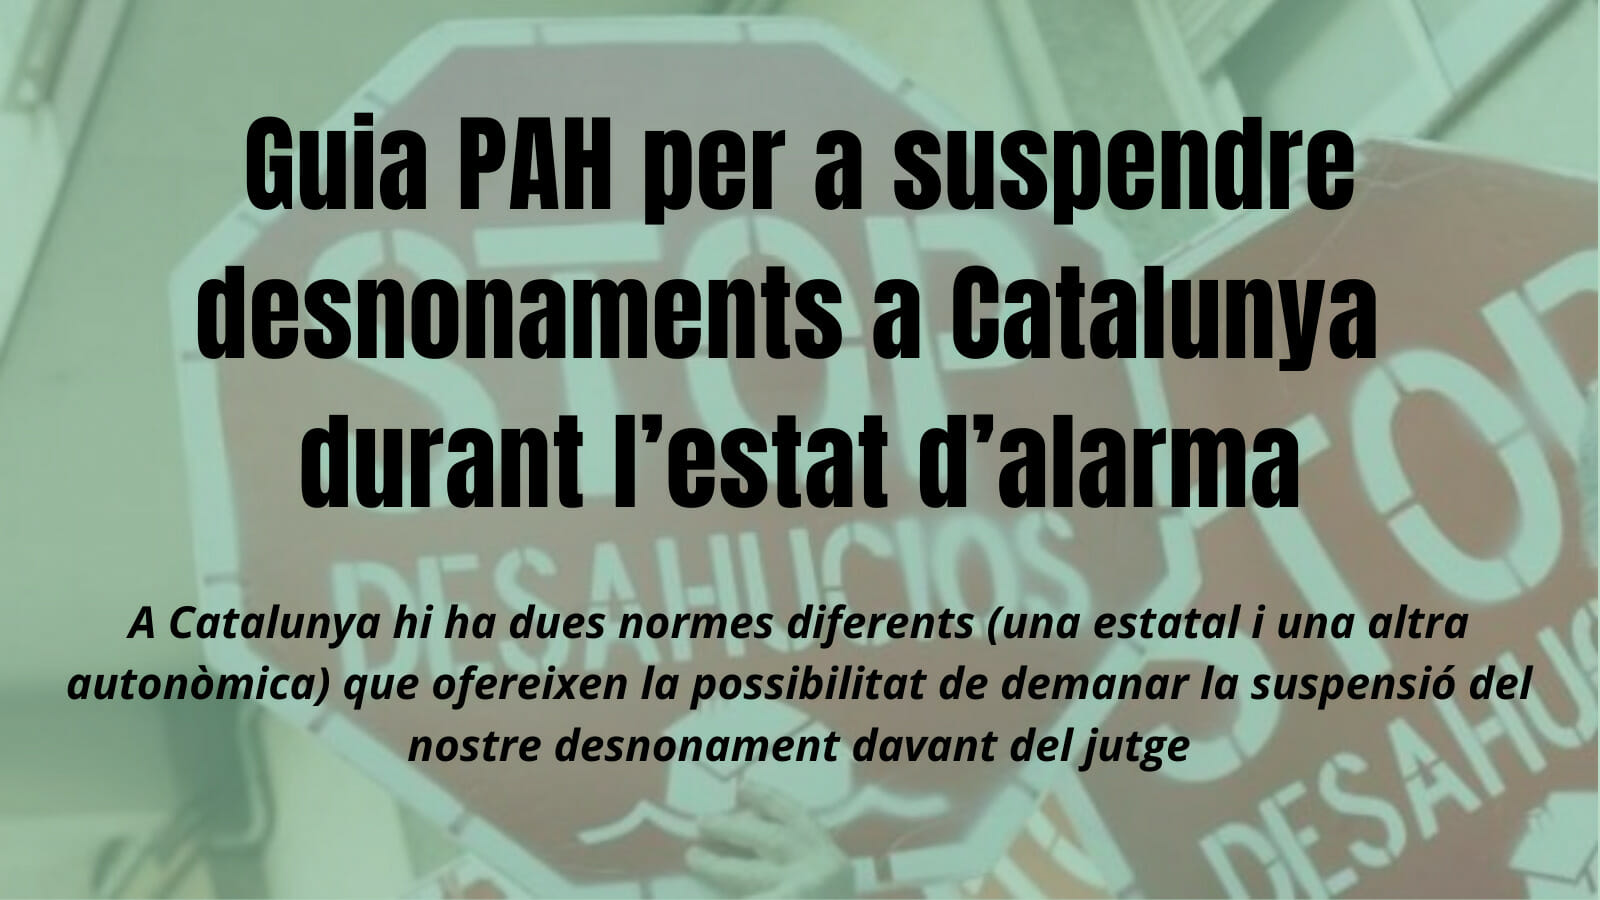 You are currently viewing Guia PAH per a suspendre desnonaments a Catalunya durant l’estat d’alarma